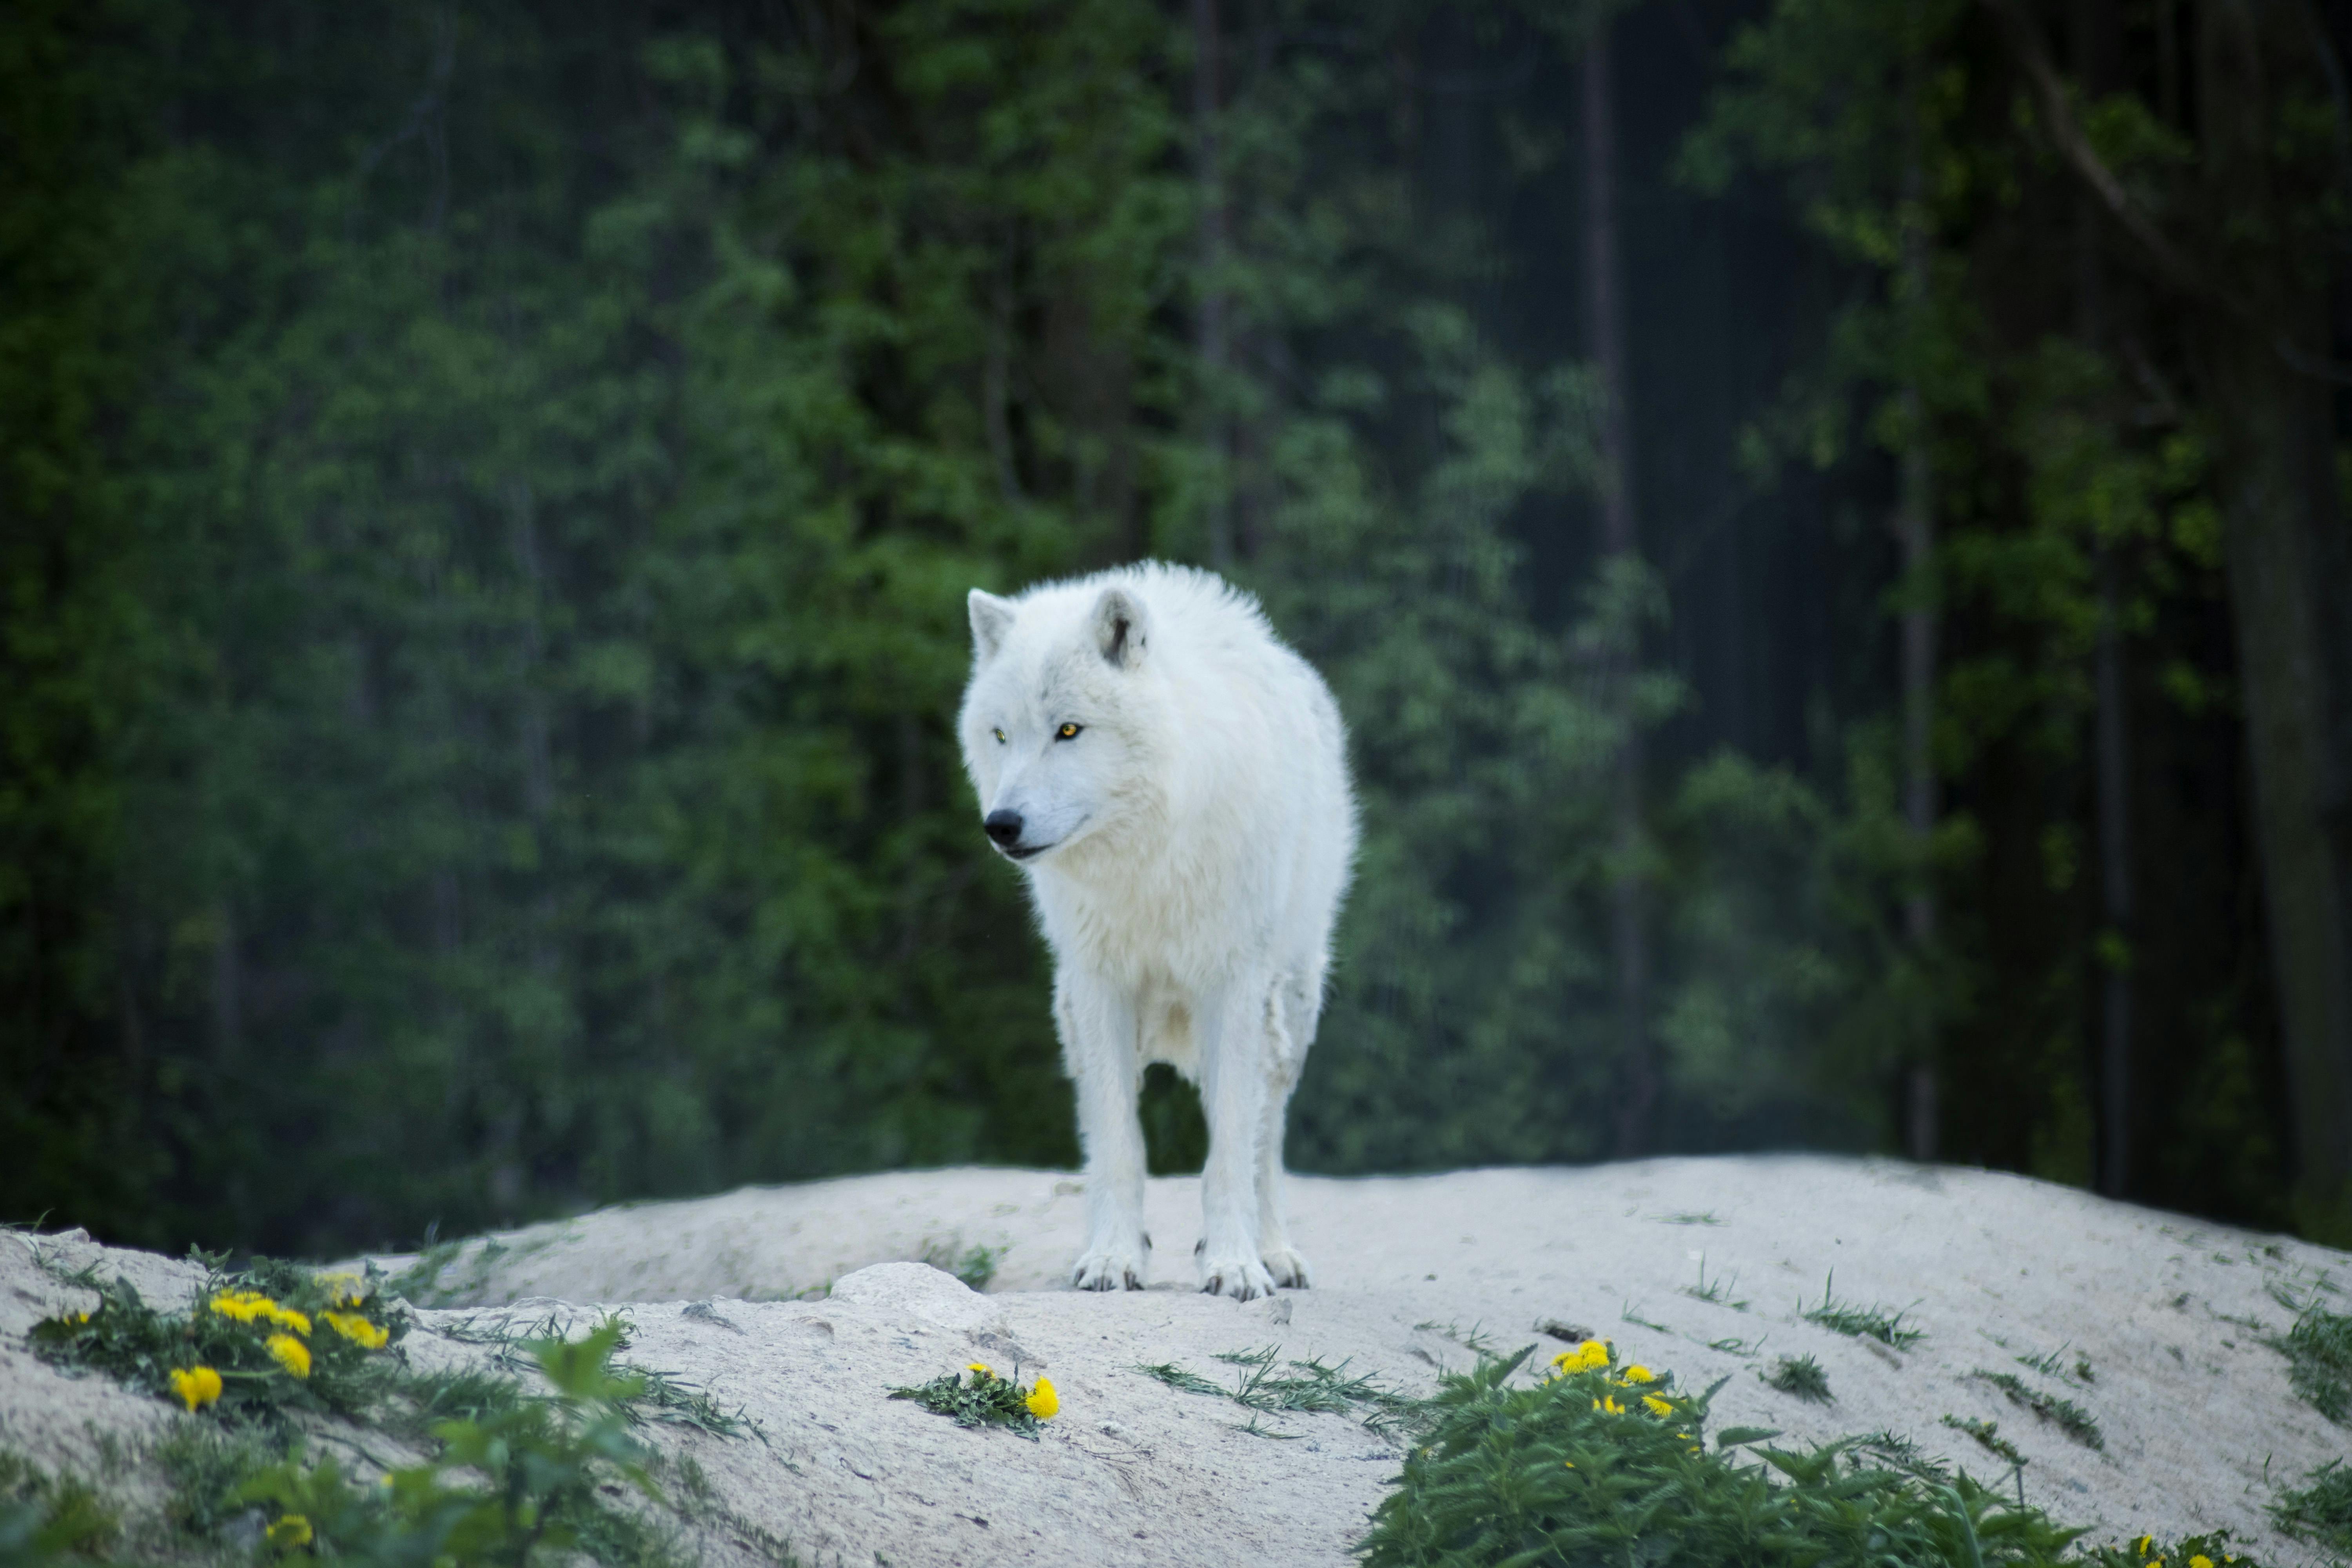 White alpha wolf wallpaper - Digital Art wallpapers - #41728